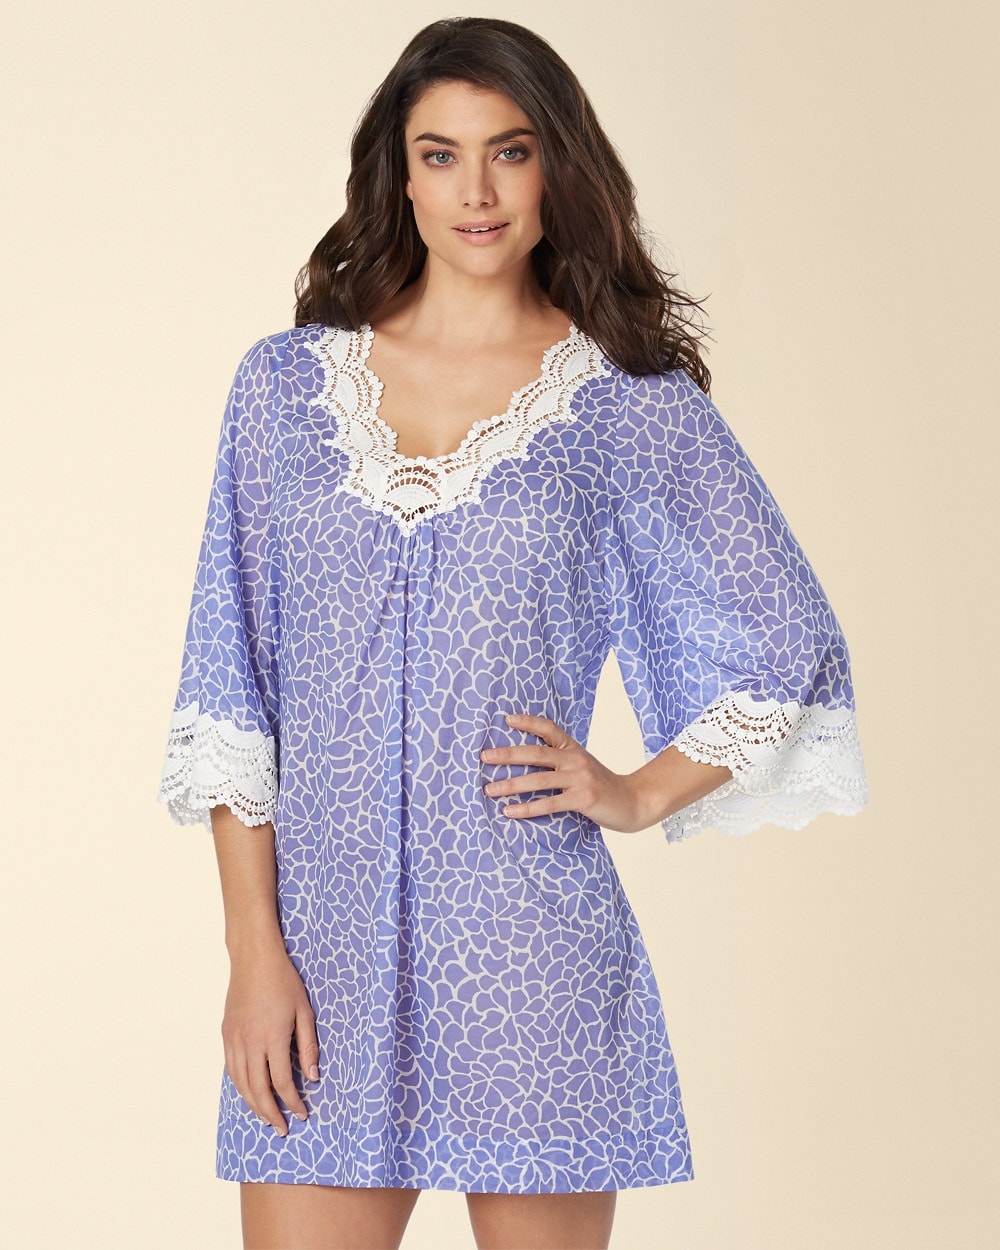 Oscar de la Renta Mosaic Petals Short Cotton Nightgown Blue Lily Print